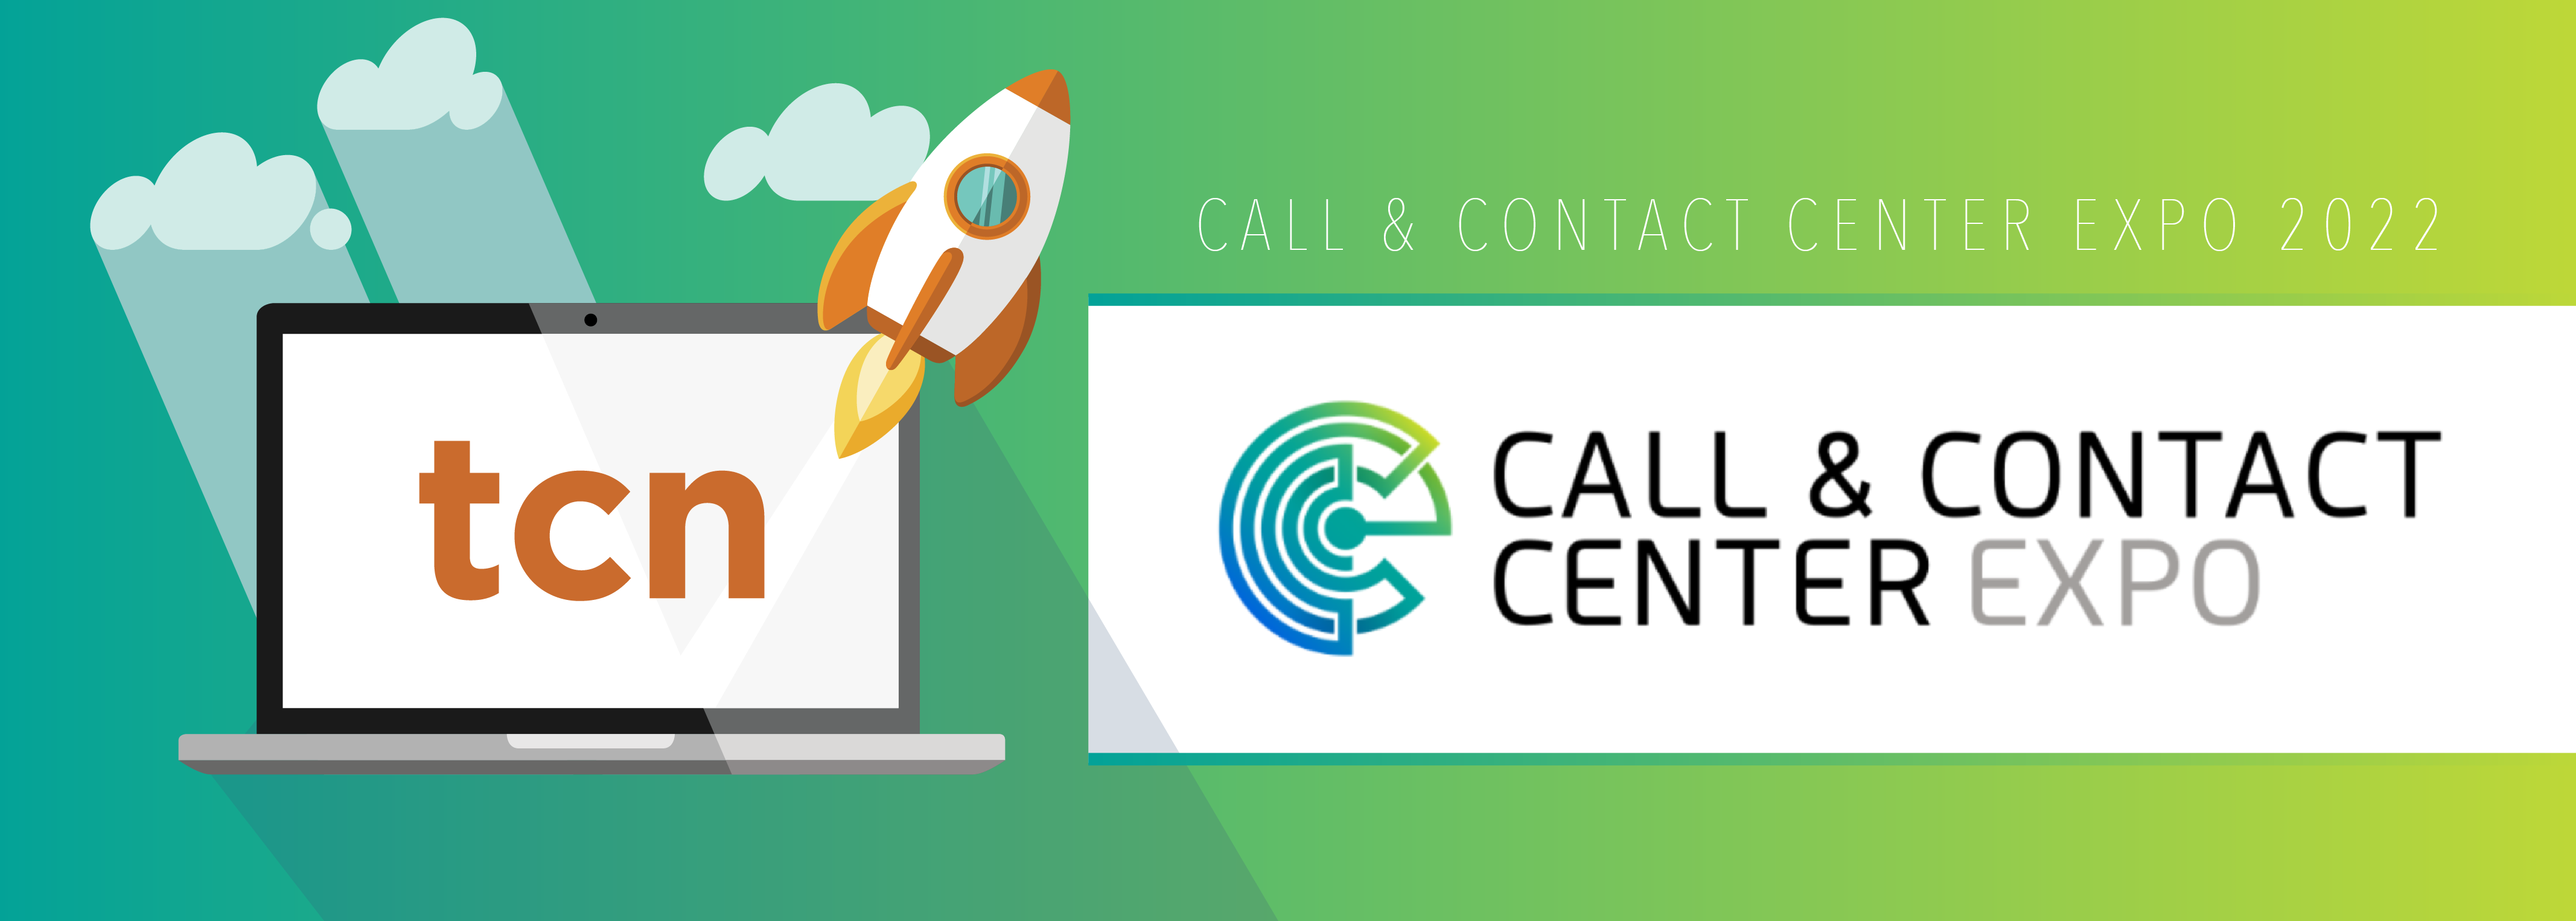 Call & Contact Center Expo Media Alert